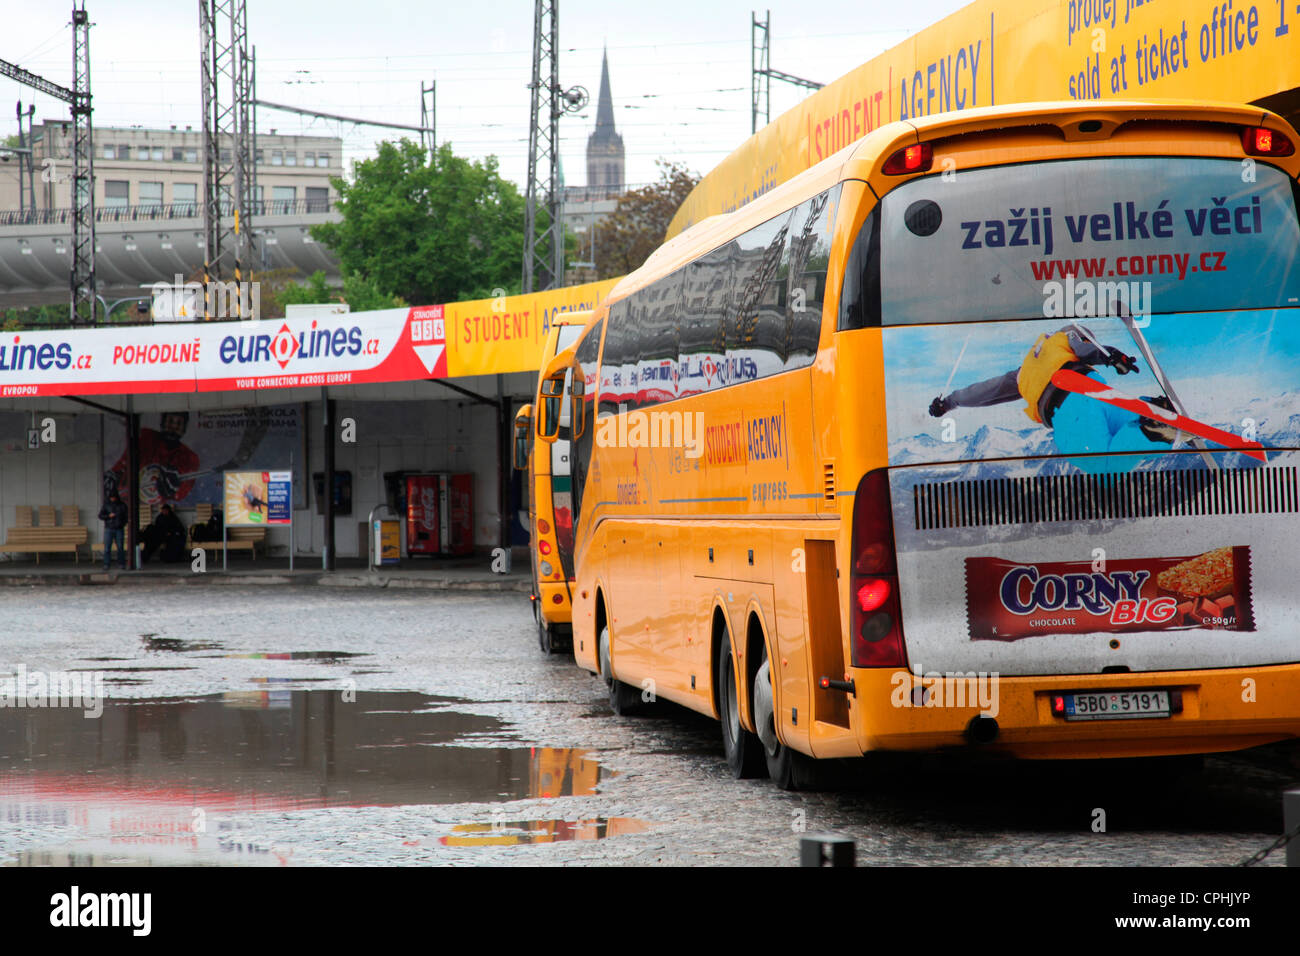 Florenc, l'une des nombreuses stations de bus de Prague, est une jonction très fréquentée pour de nombreux voyageurs.de nombreuses destinations de bus sont exploitées par la populaire Agence étudiante Banque D'Images